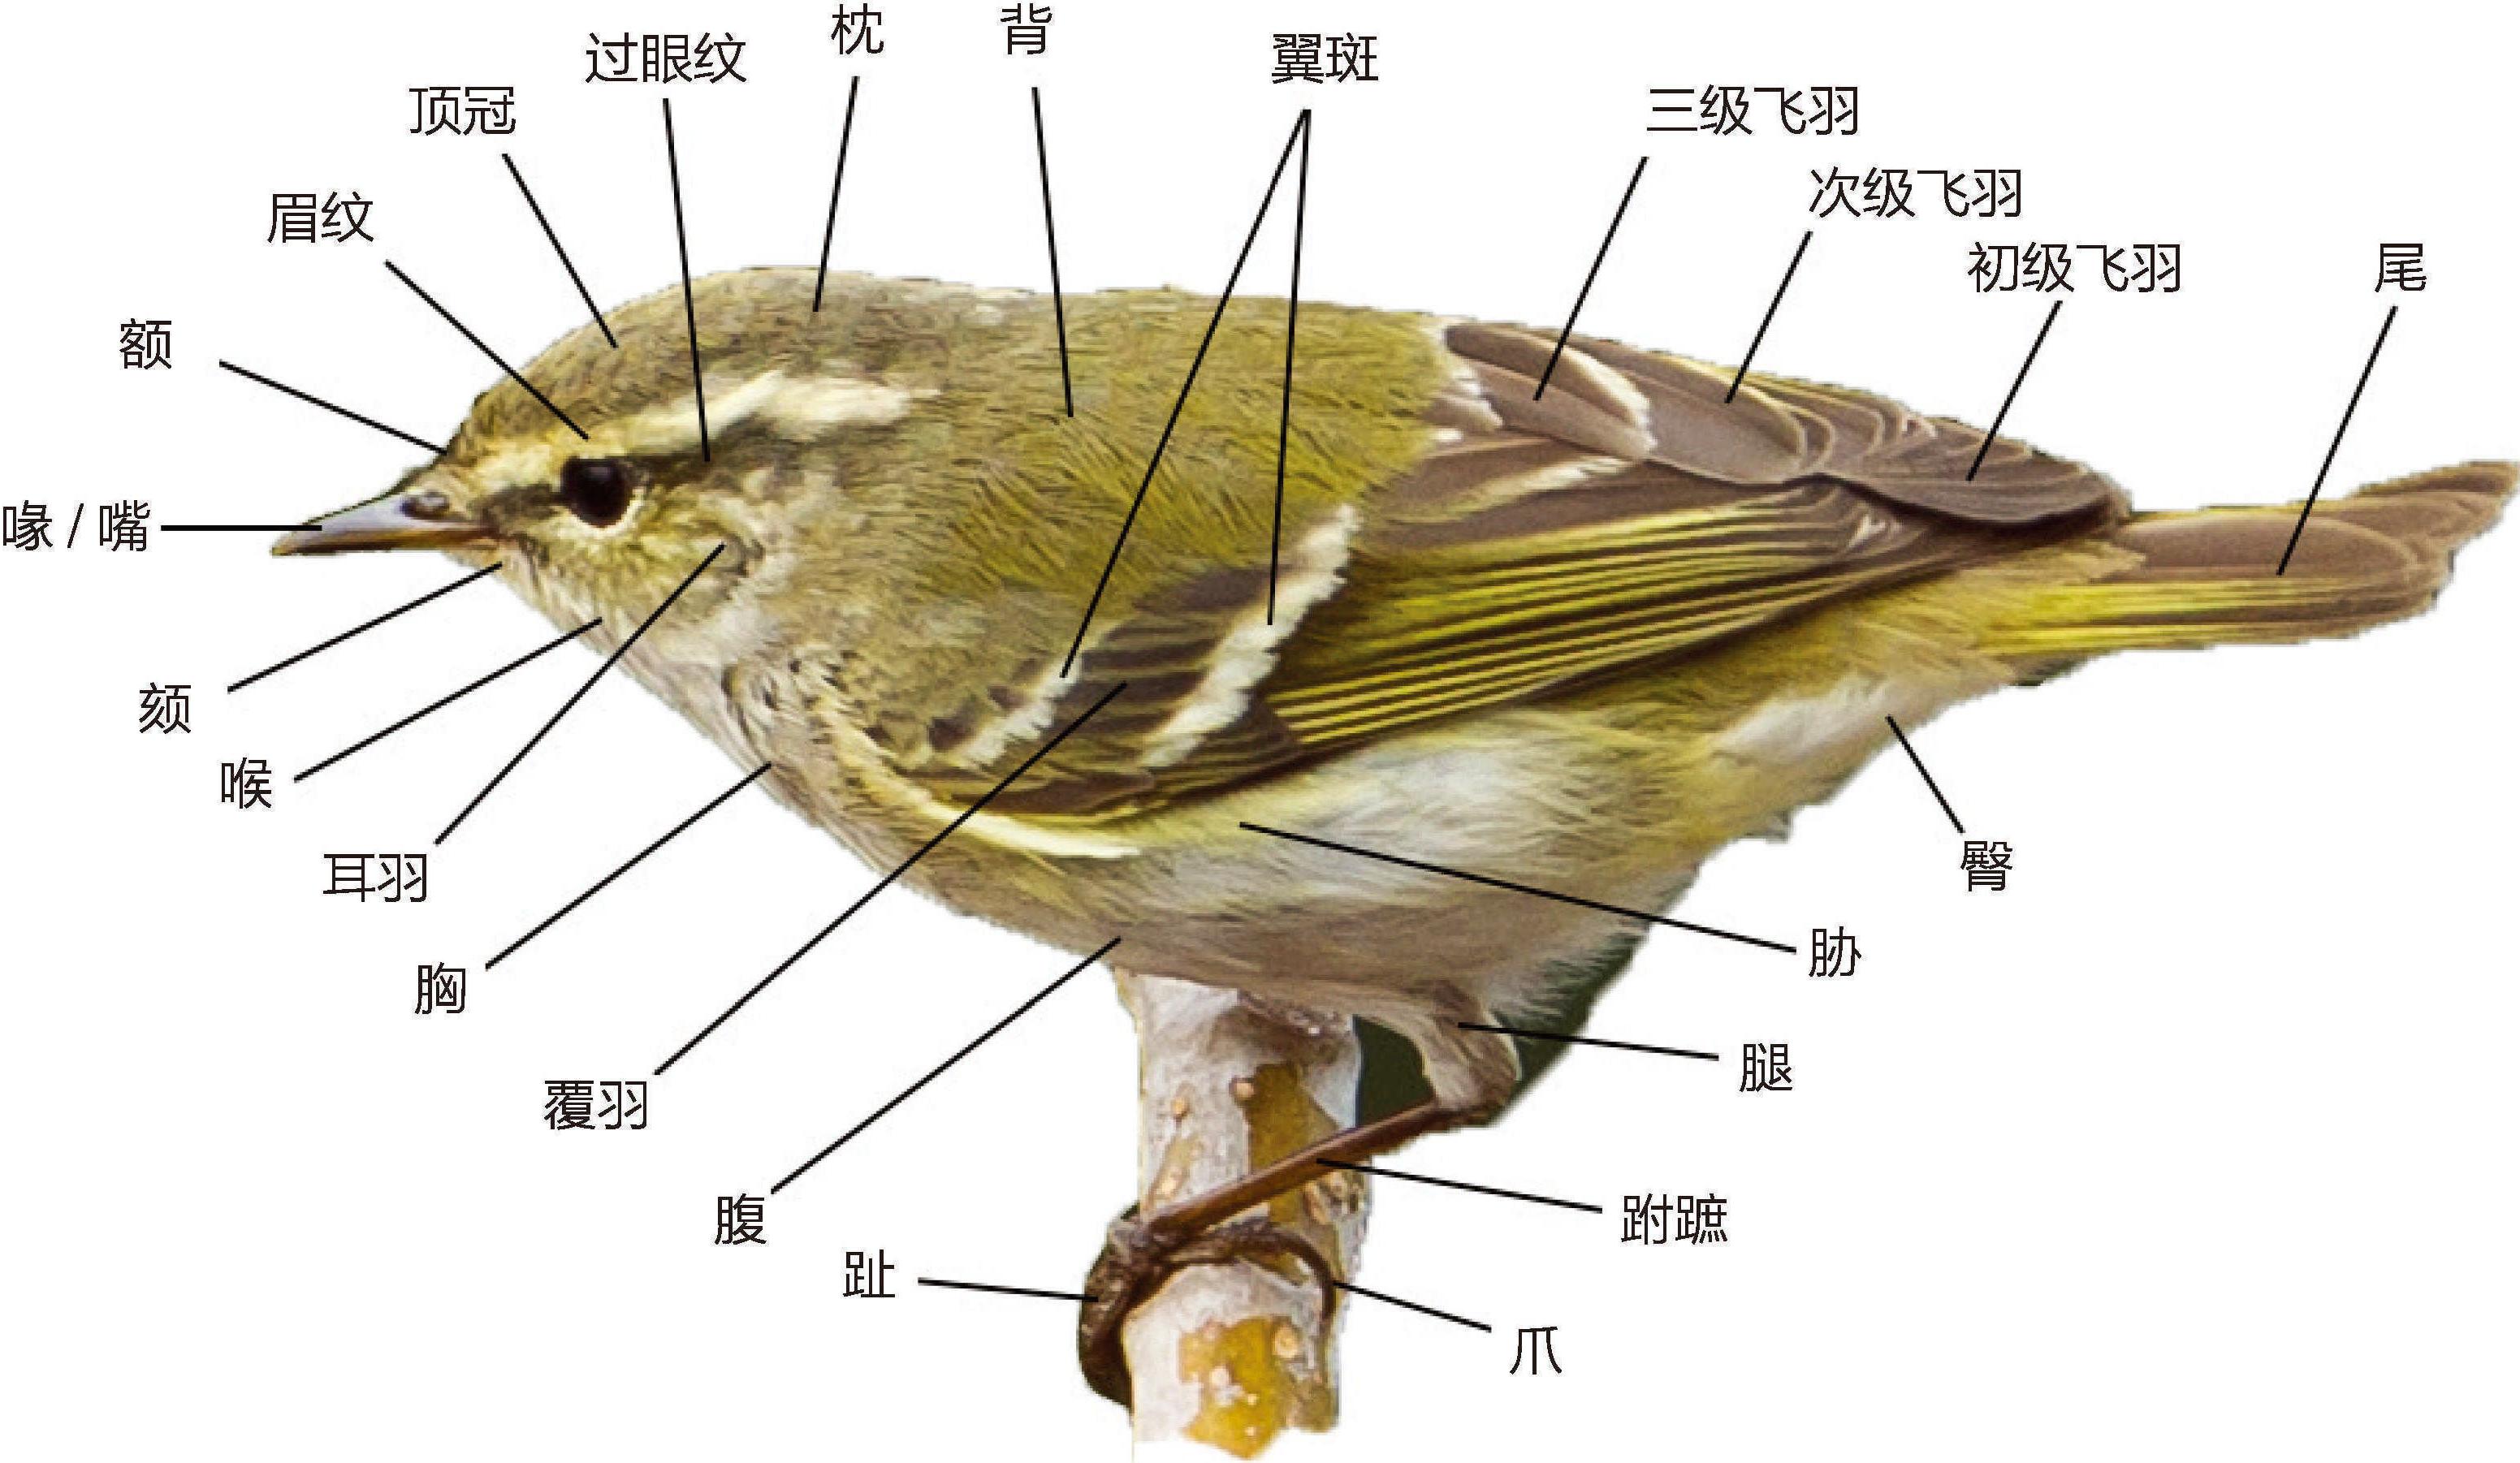 常见鸟类名词和术语解释